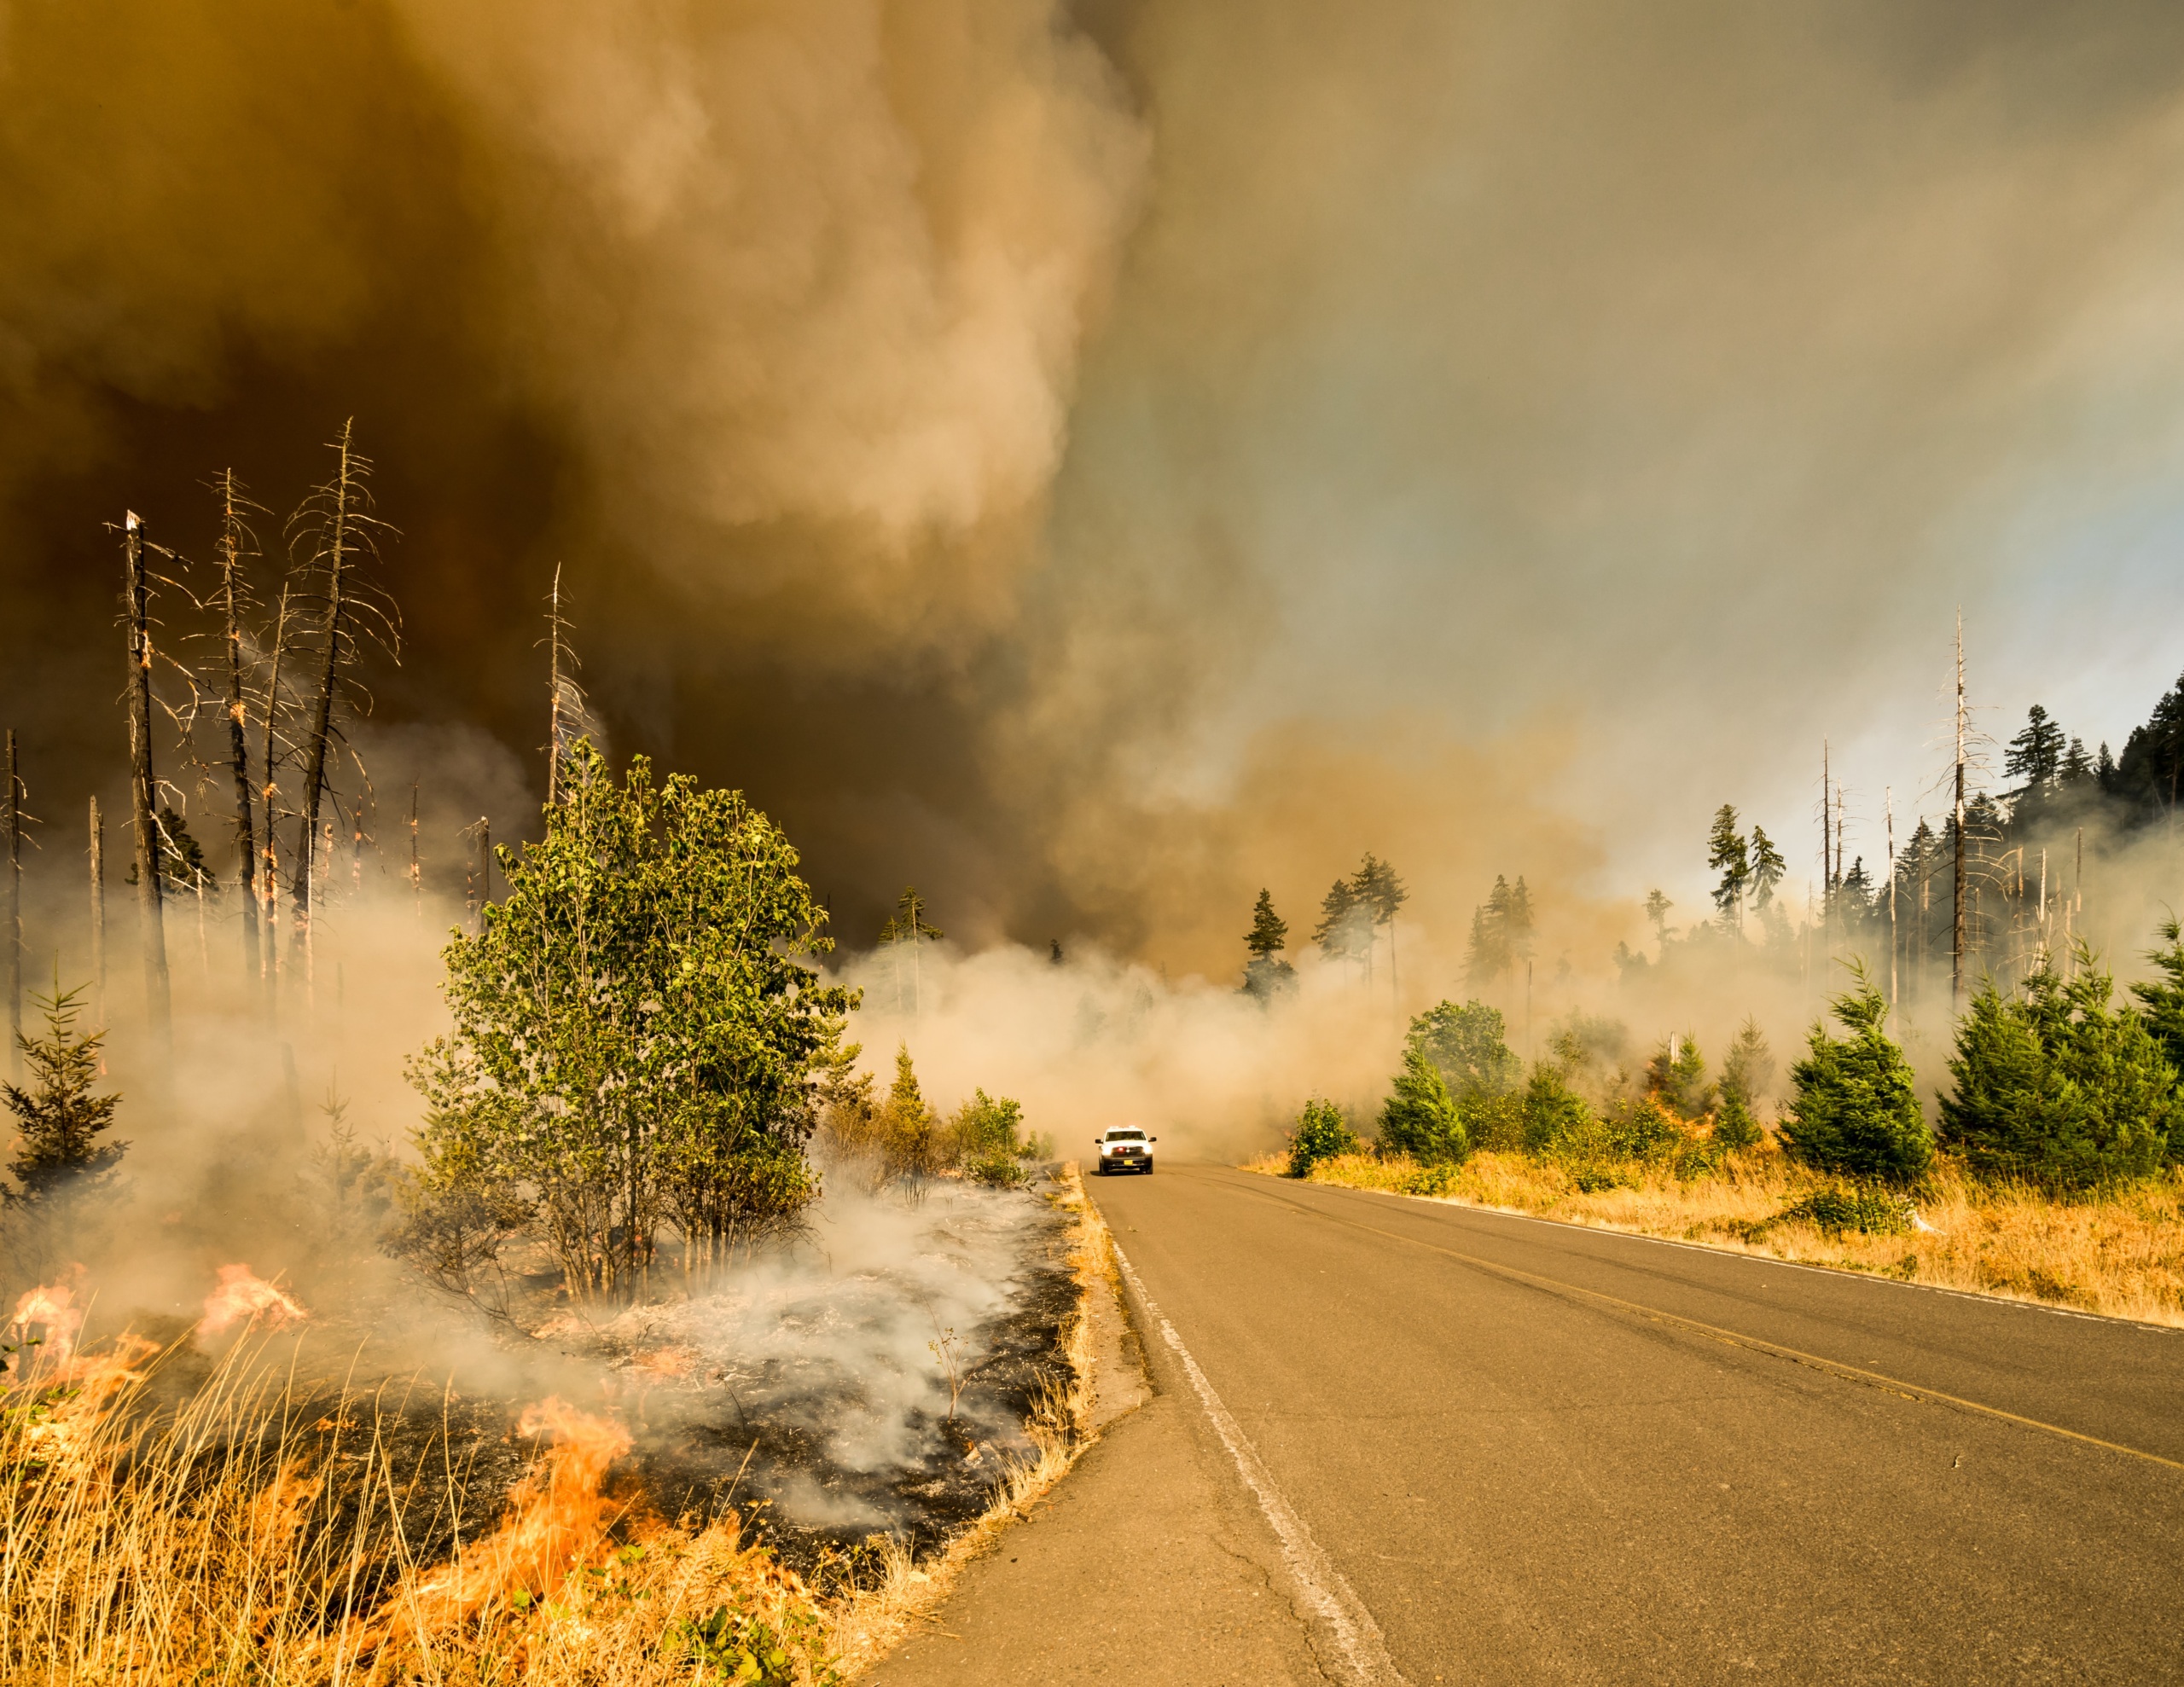 The Jones Fire in Oregon in 2017